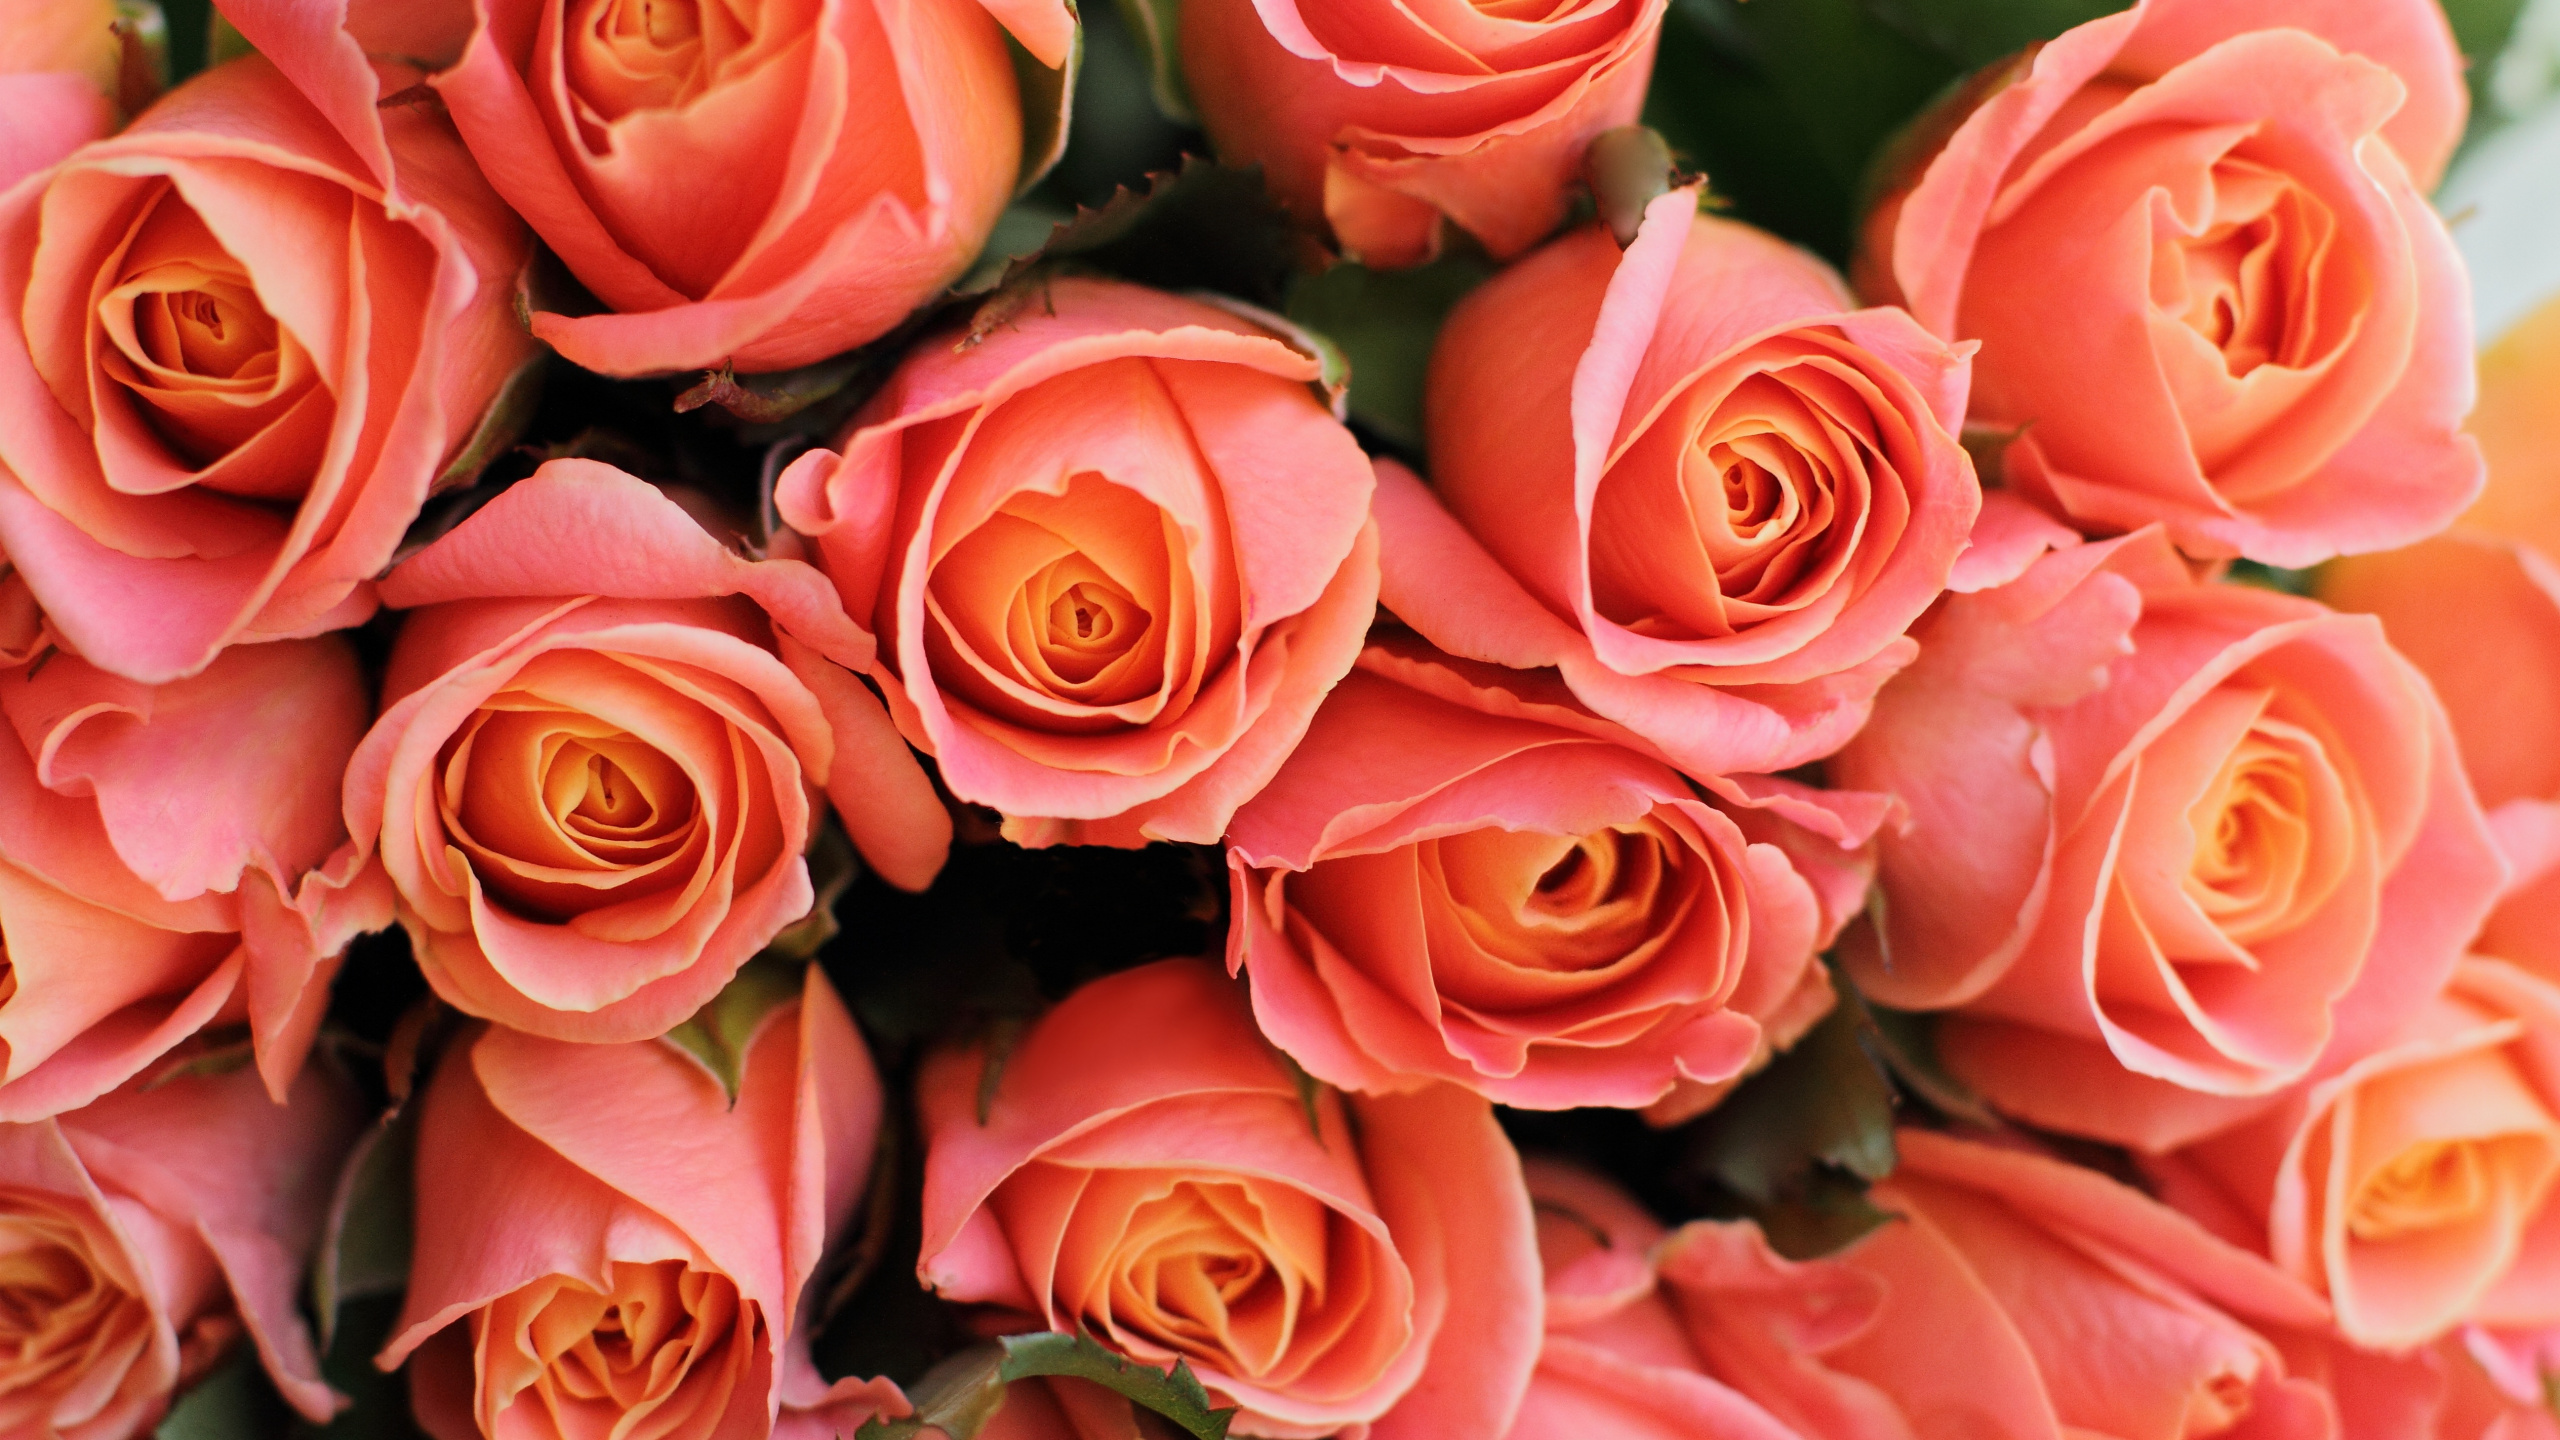 玫瑰花园, 显花植物, 多花, 粉红色, 切花 壁纸 2560x1440 允许